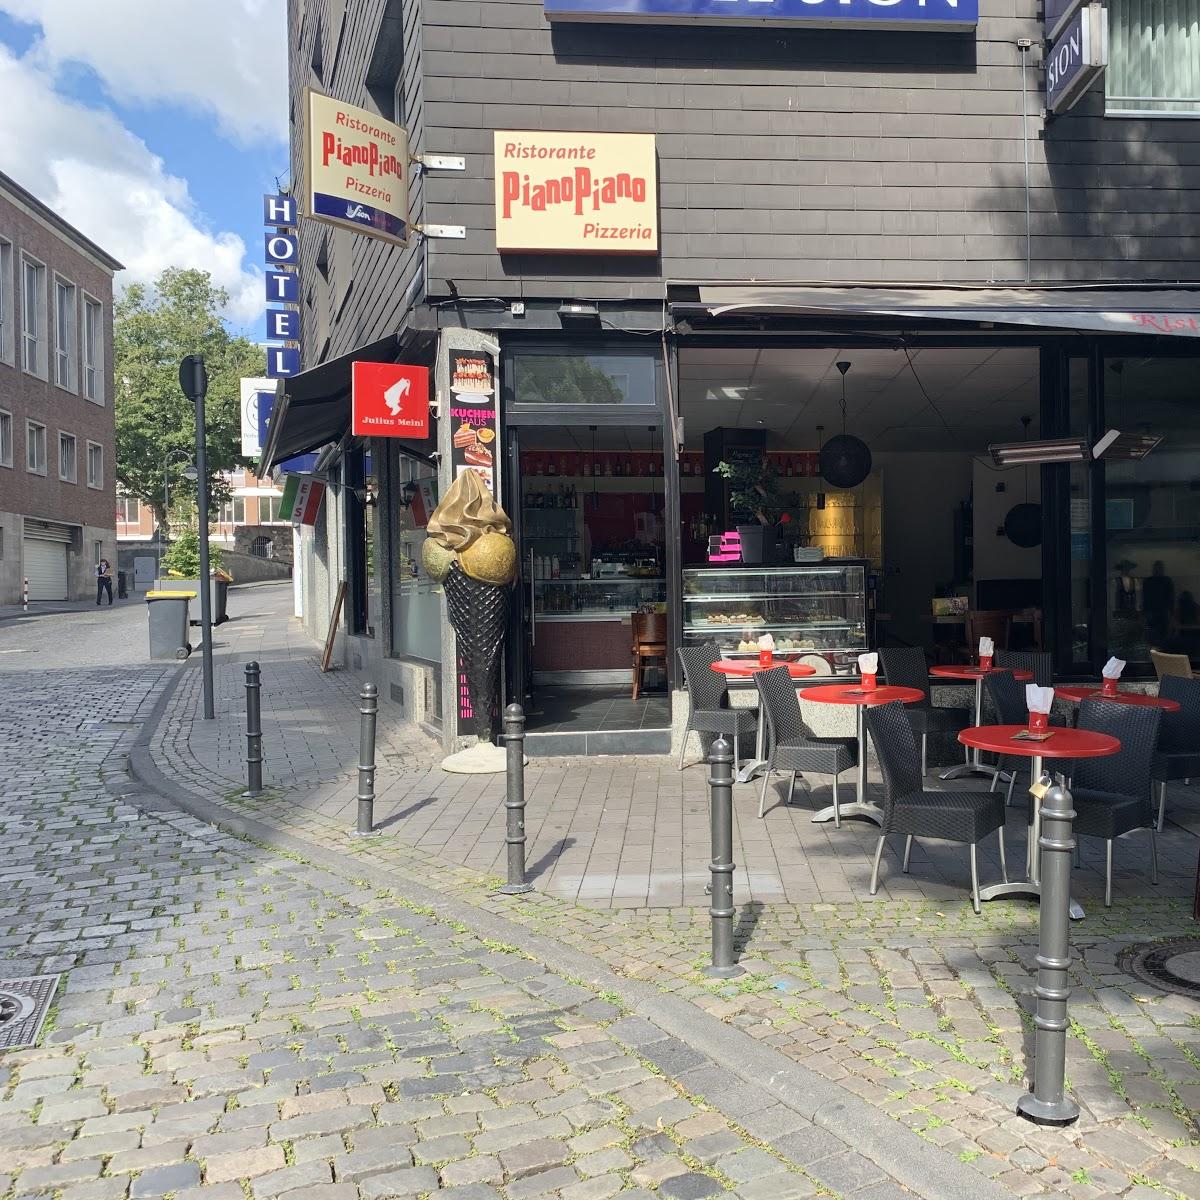 Restaurant "PianoPiano" in Köln